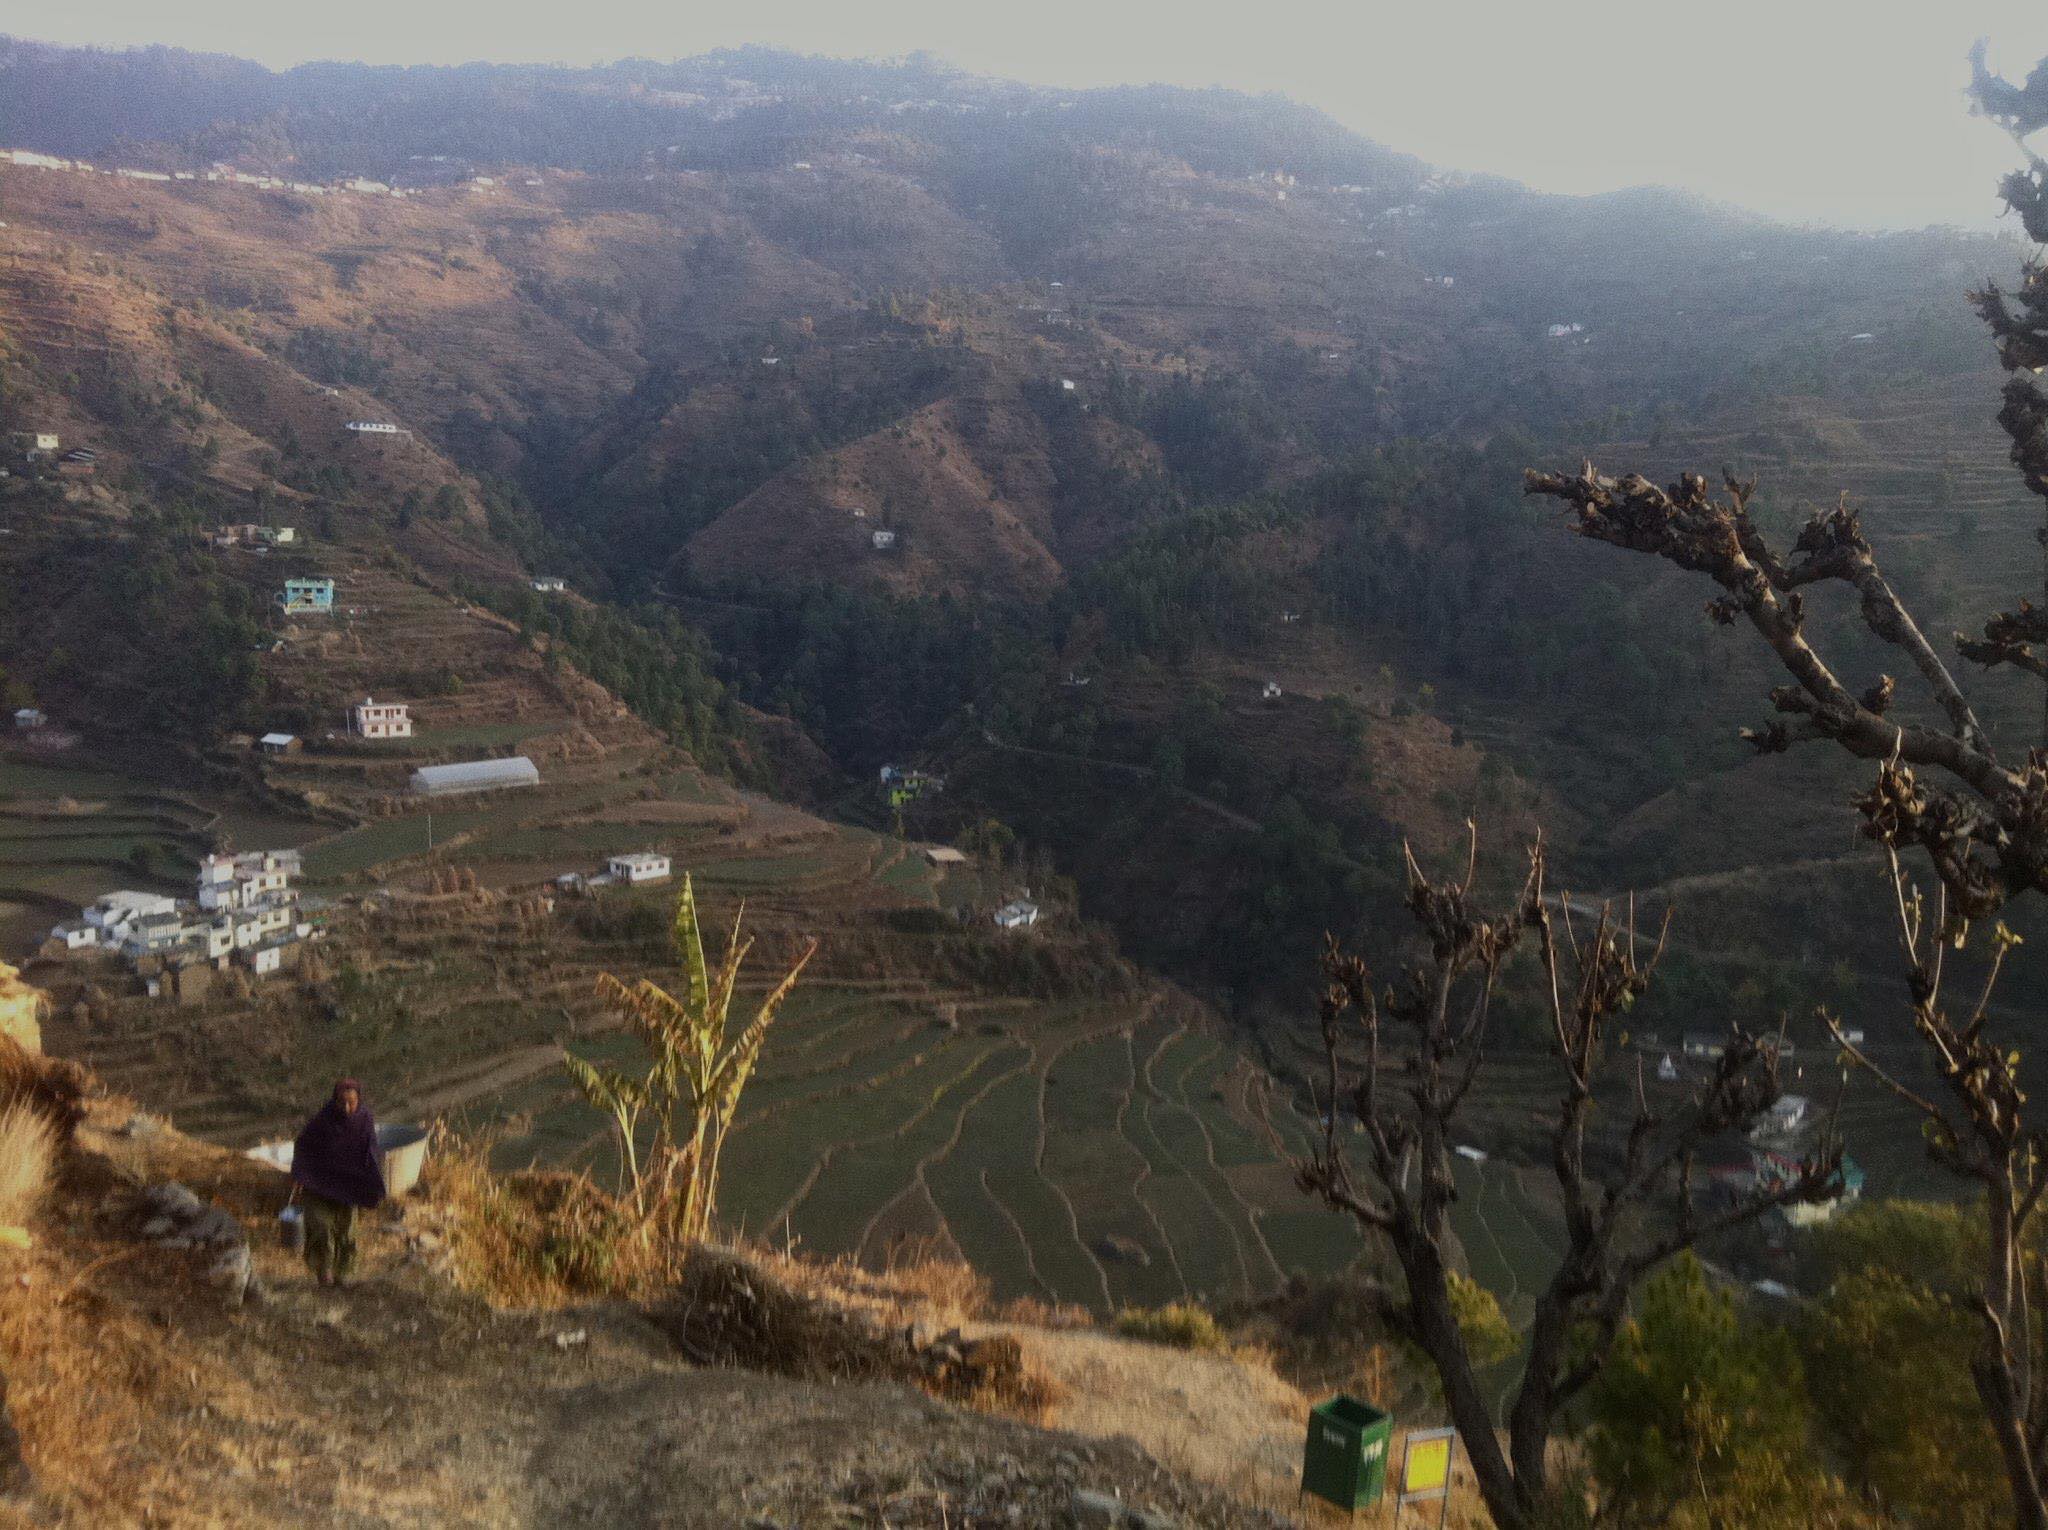 Remote Himalayan farming village Ellen visited